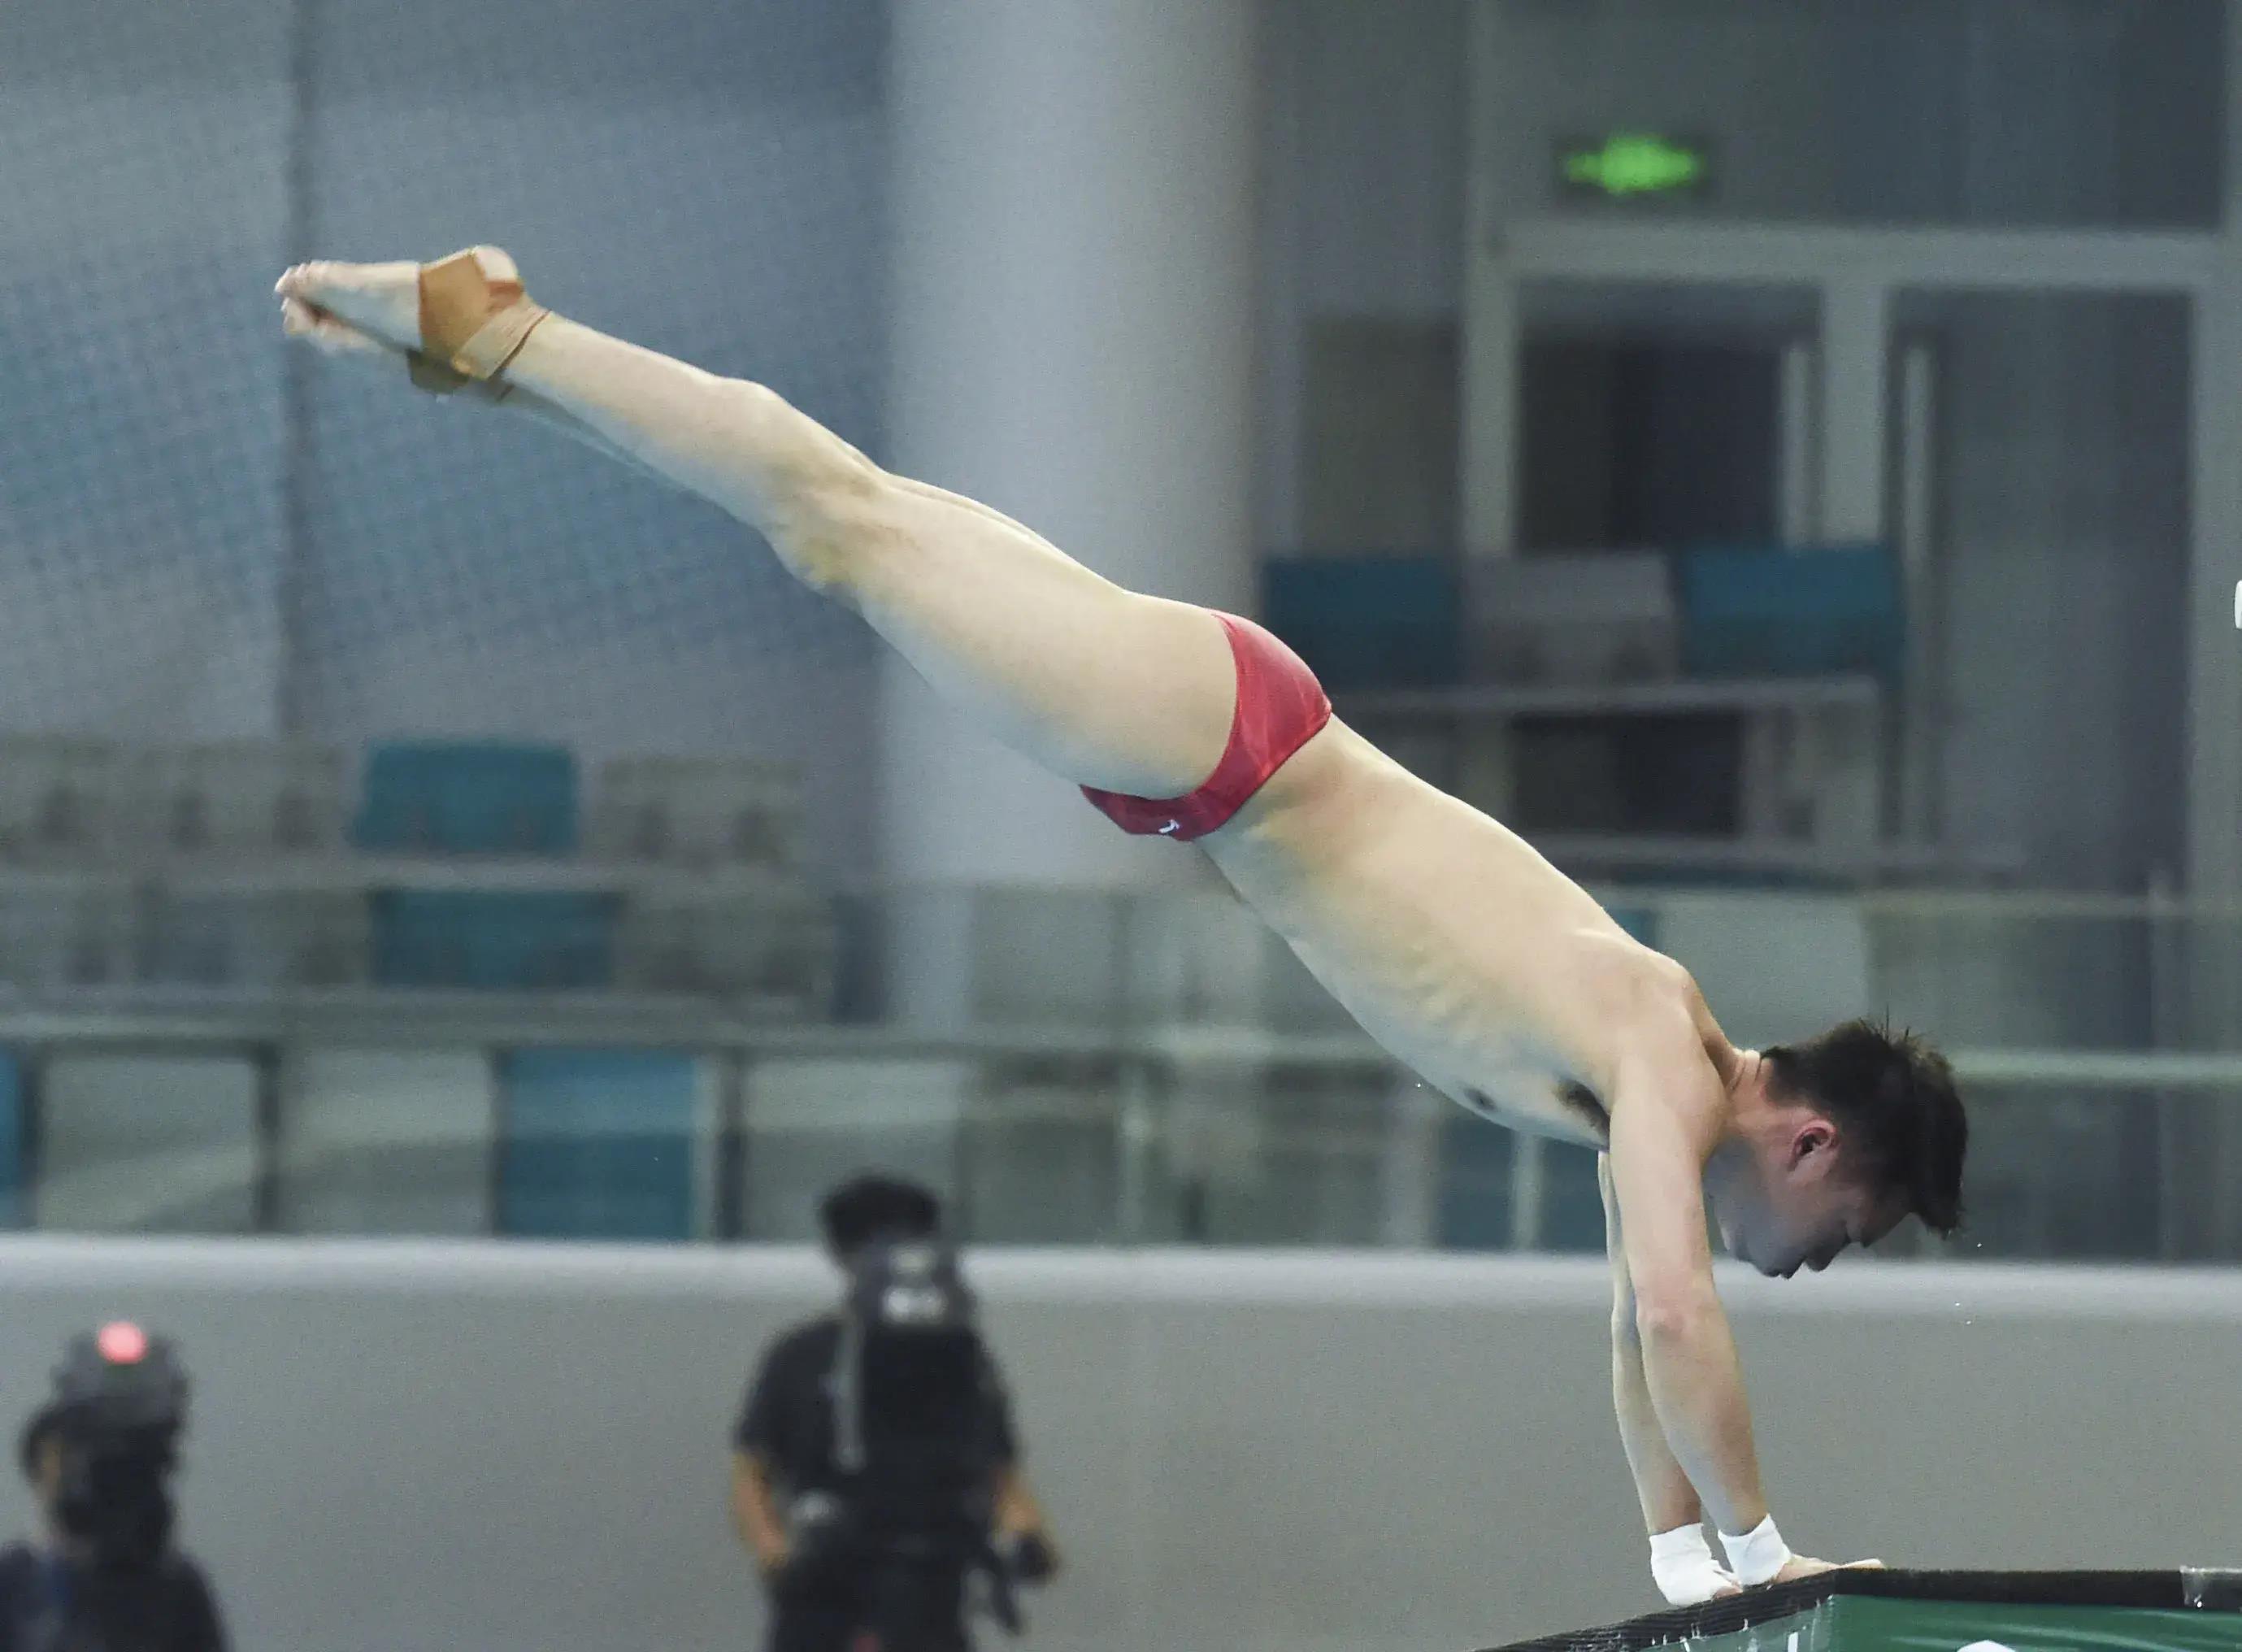 中国跳水运动员男生图片